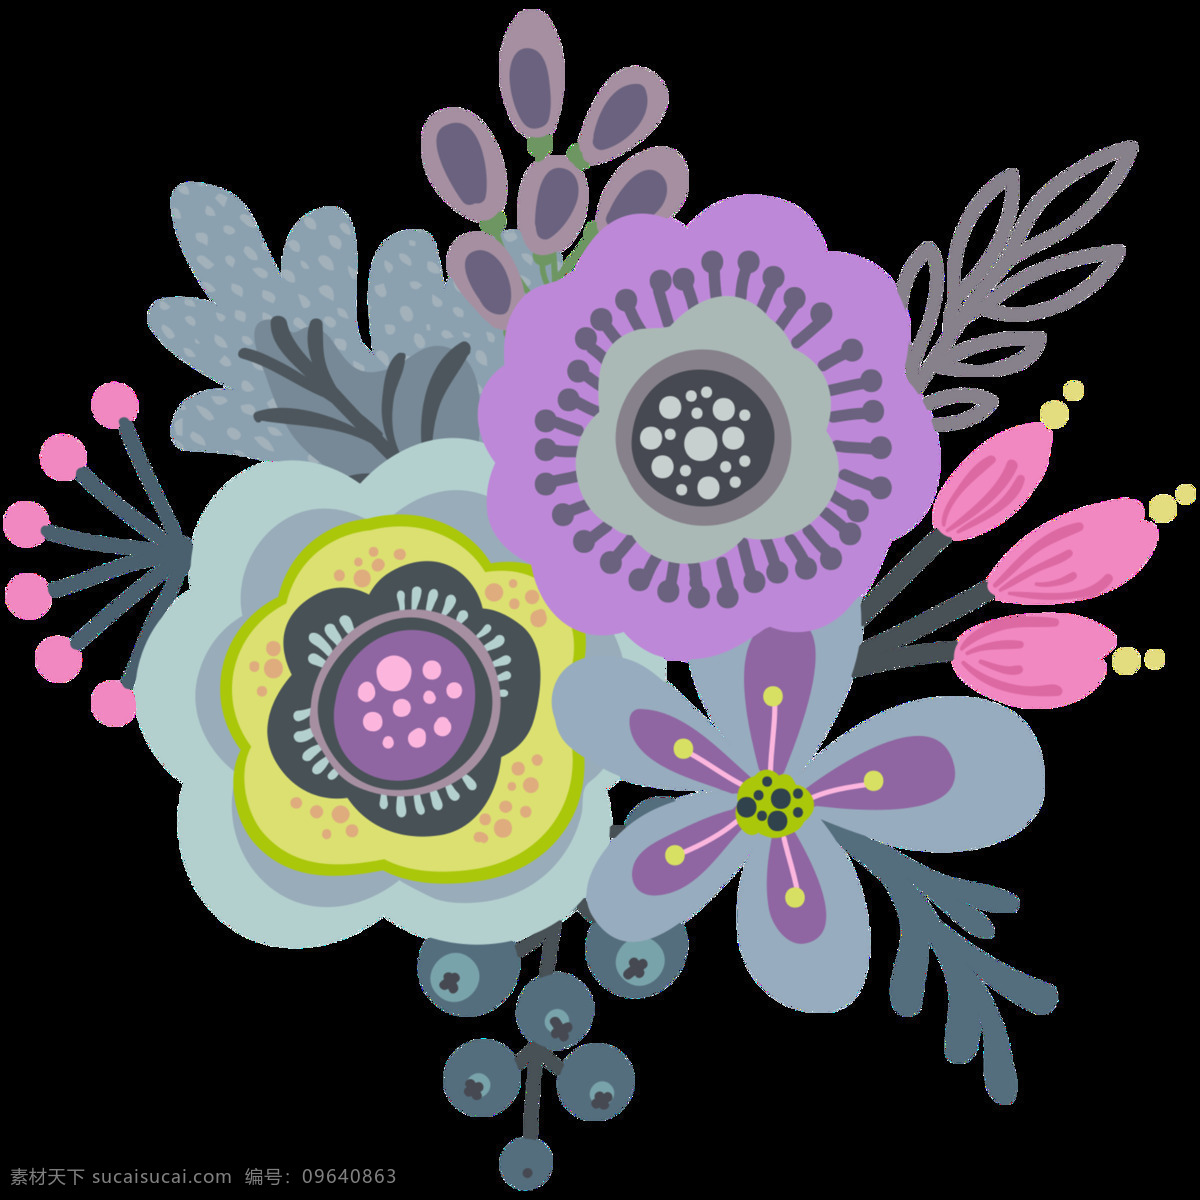 暖 色系 植物 透明 暖色 花卉 卡通 抠图专用 装饰 设计素材